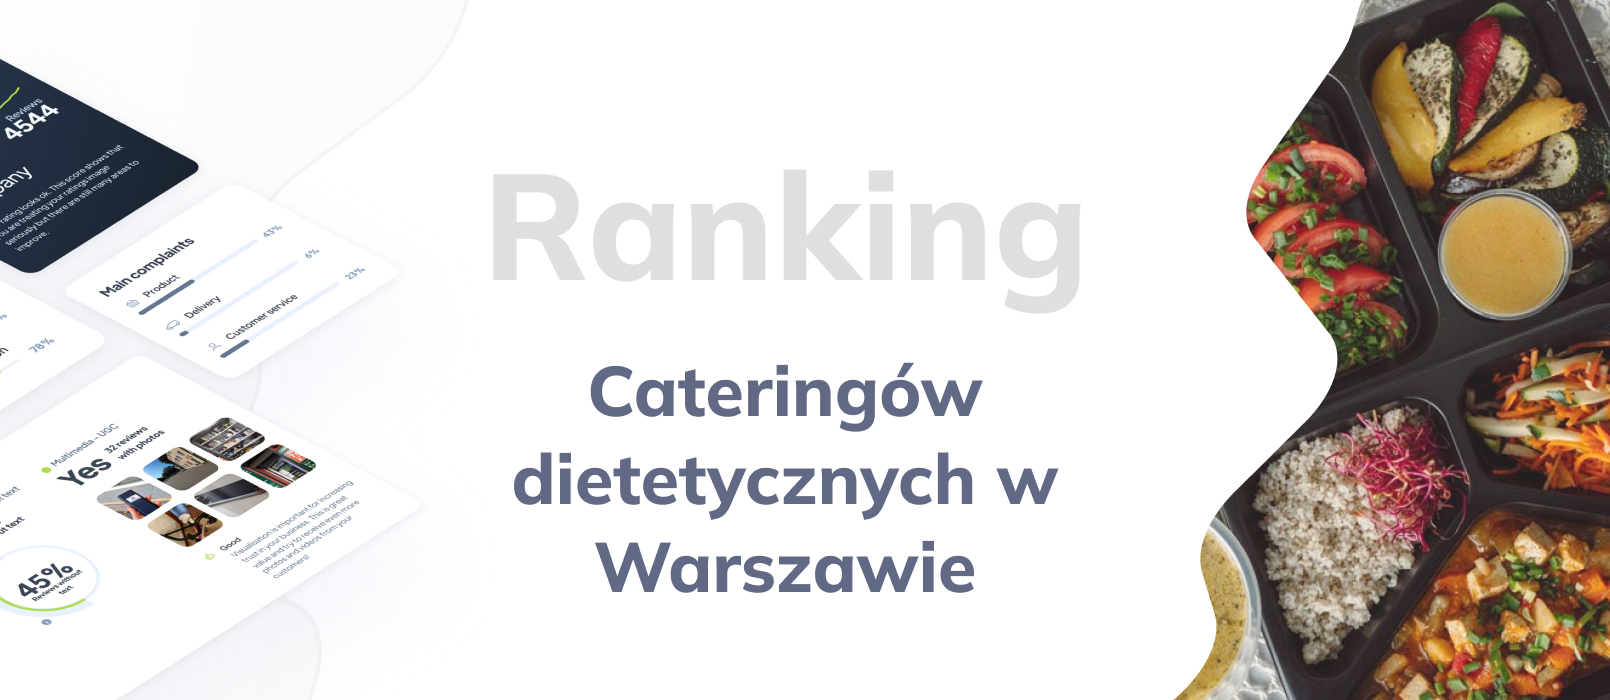 Cateringi dietetyczne w Warszawie -  ranking TOP 10